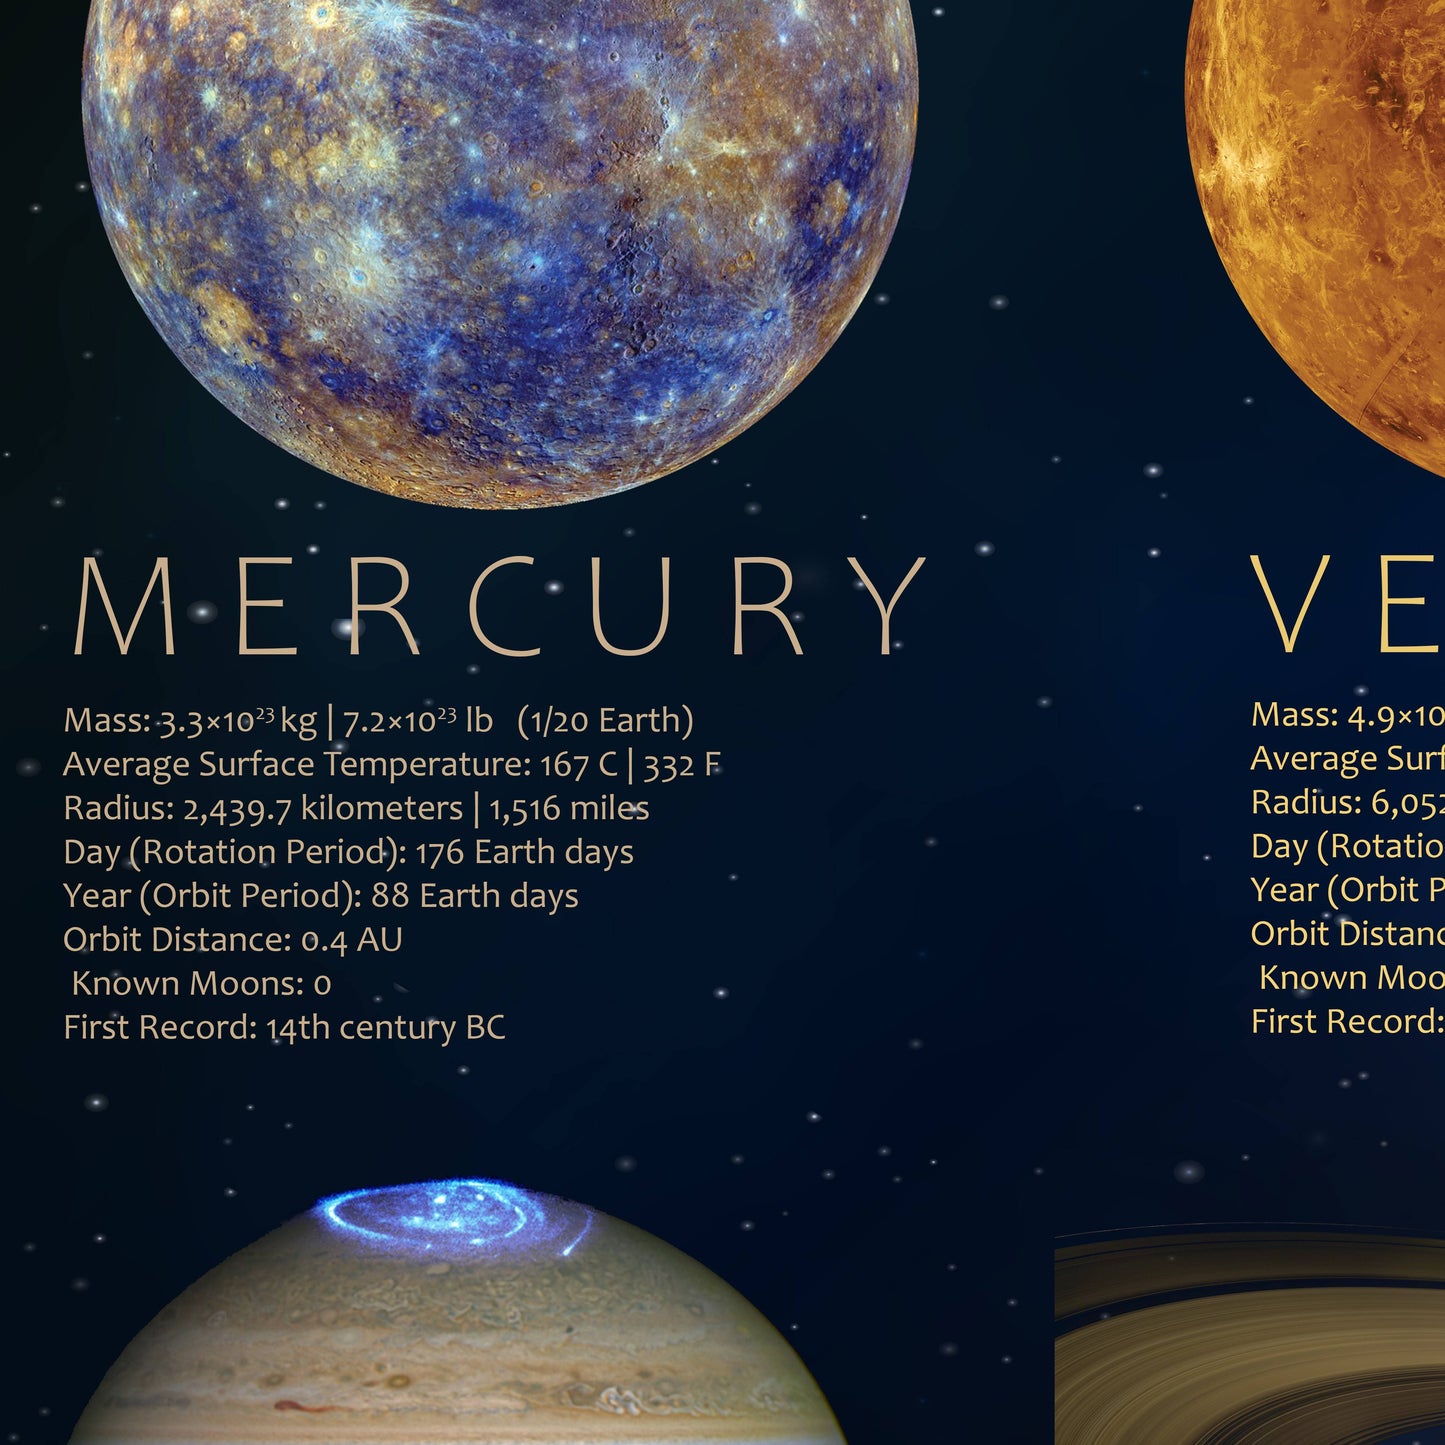 Les planètes de notre système solaire Poster (anglais)